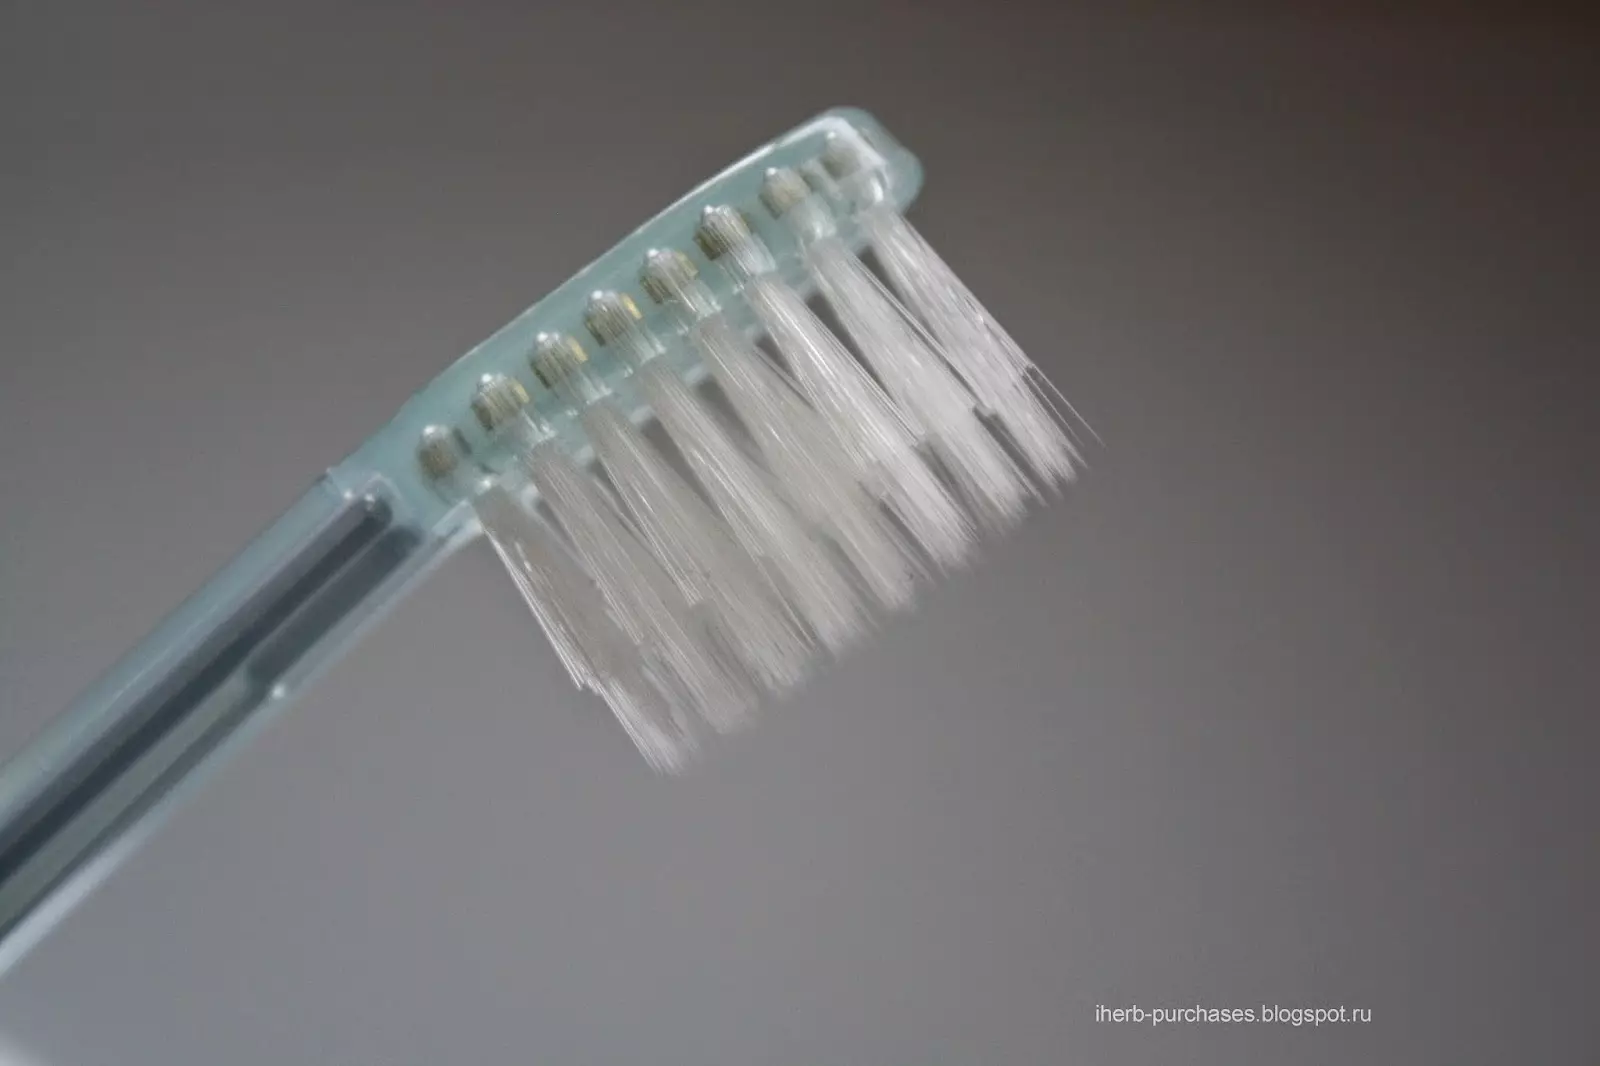 فرشاة الأسنان: أفضل فرشاة للأسنان والخيزران والأيونية، وكيفية اختيار، يدوي والمتأكد، الأنواع الأخرى 24014_21